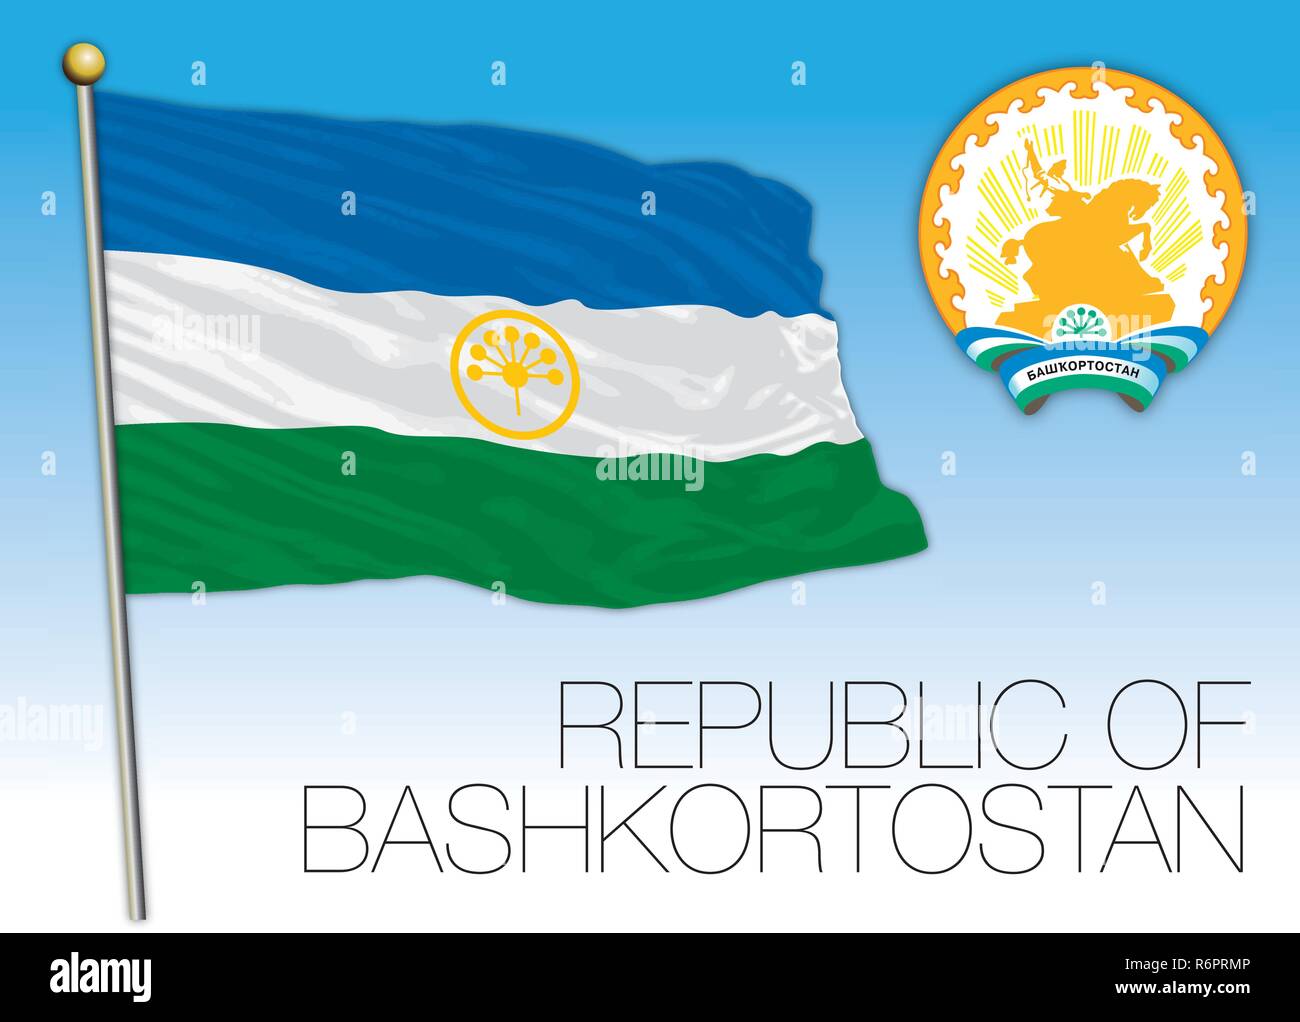 Bashkortostan Republic flag, Russian Federation, vector illustration Stock Vector